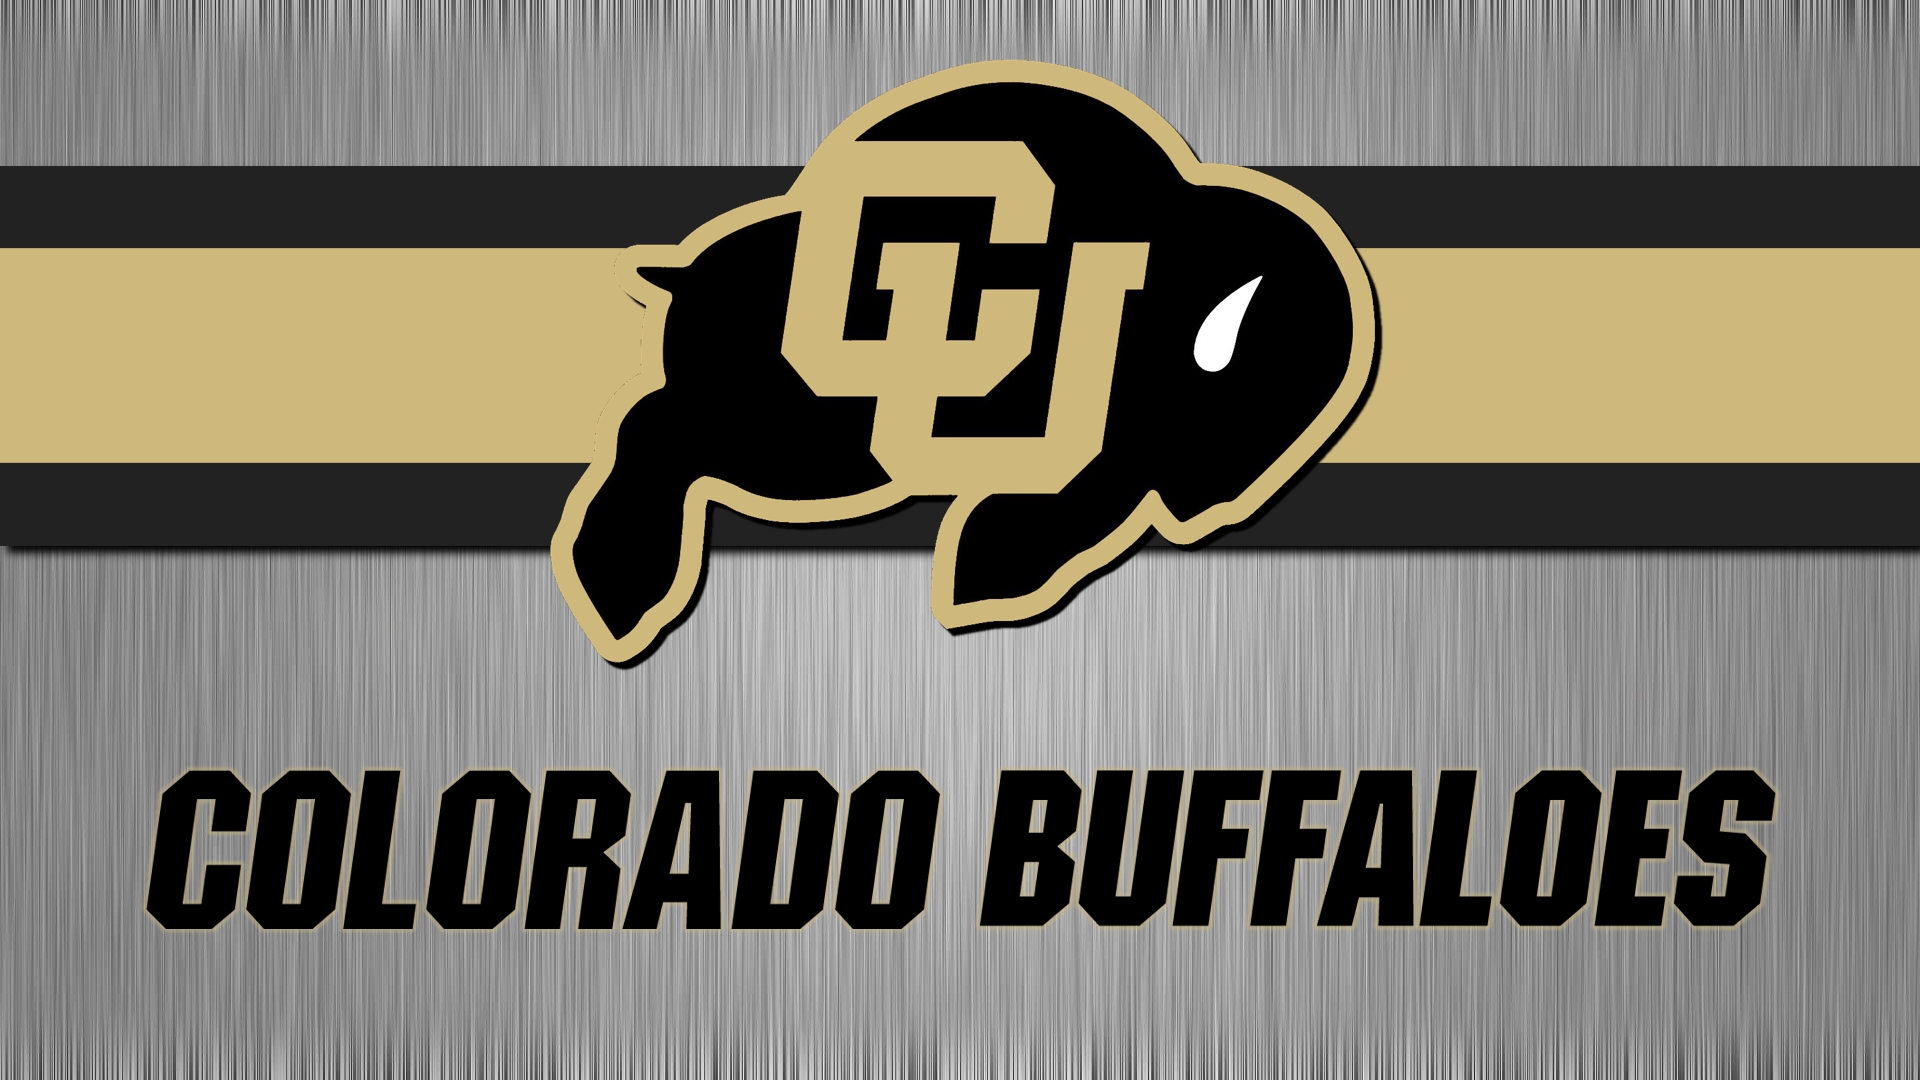 General 1920x1080 American football University of Colorado Colorado boulder Colorado Buffaloes logo simple background sport minimalism